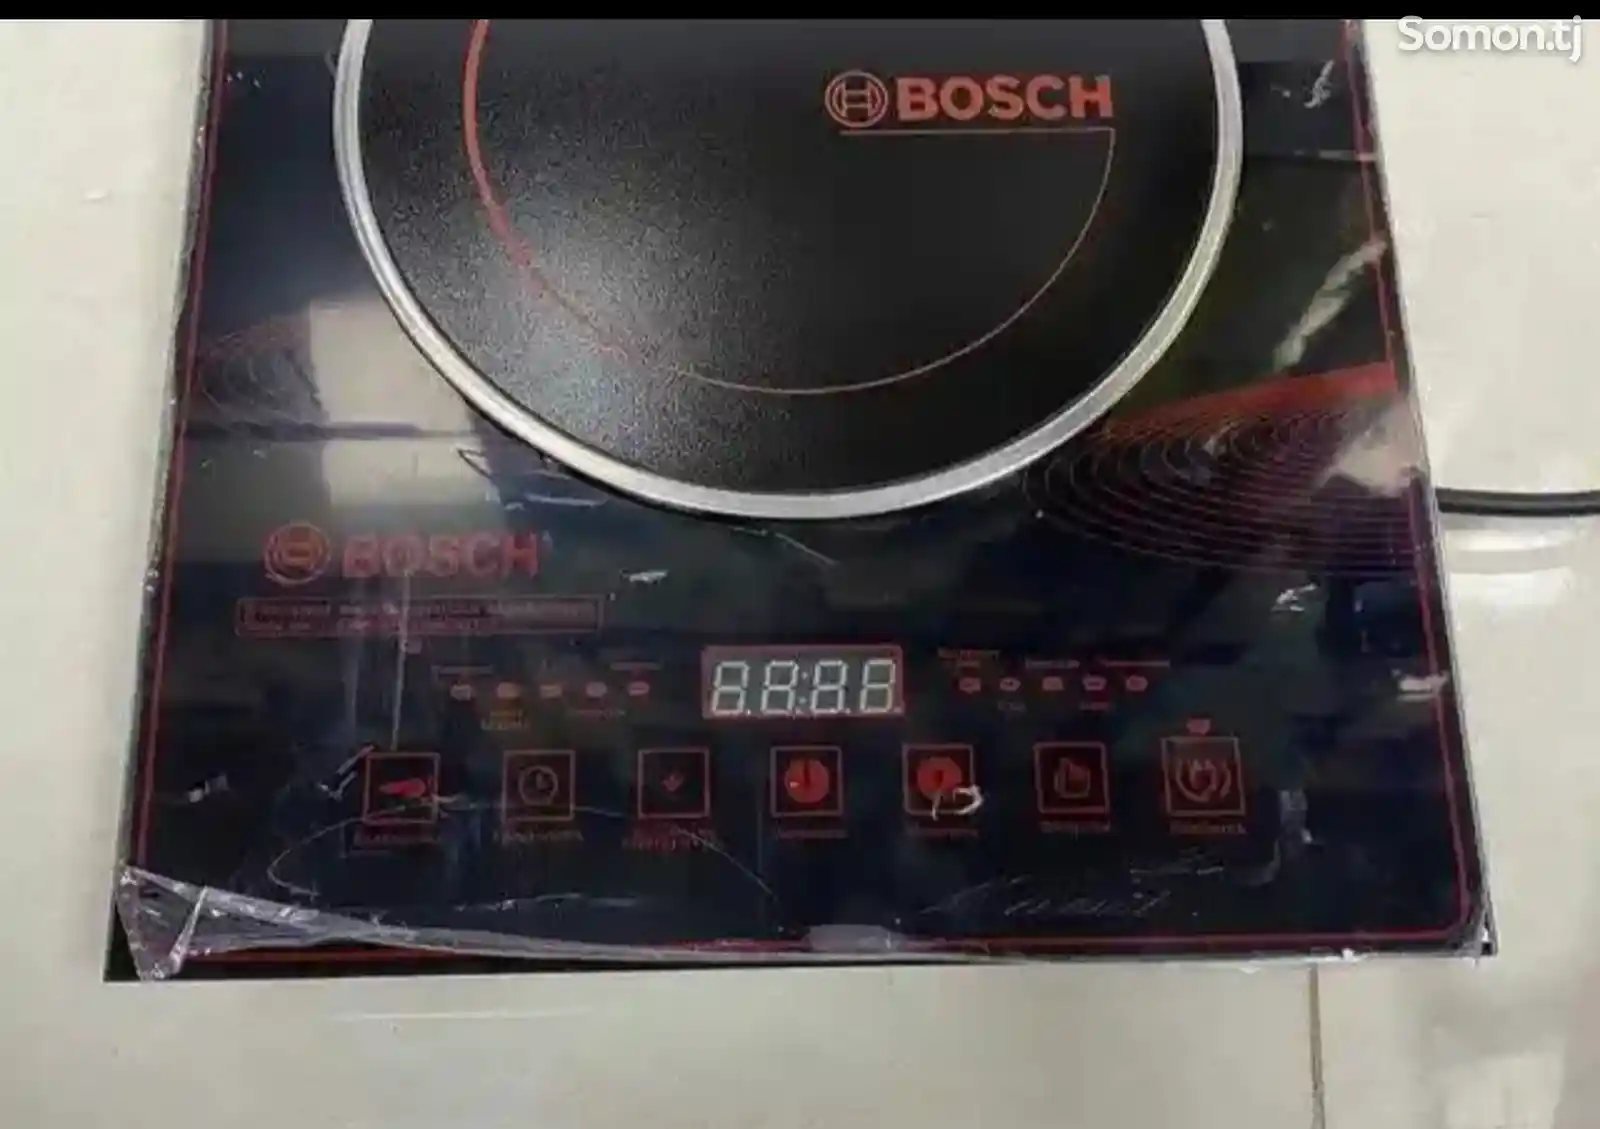 Сенсорная плита Bosch 7032-2